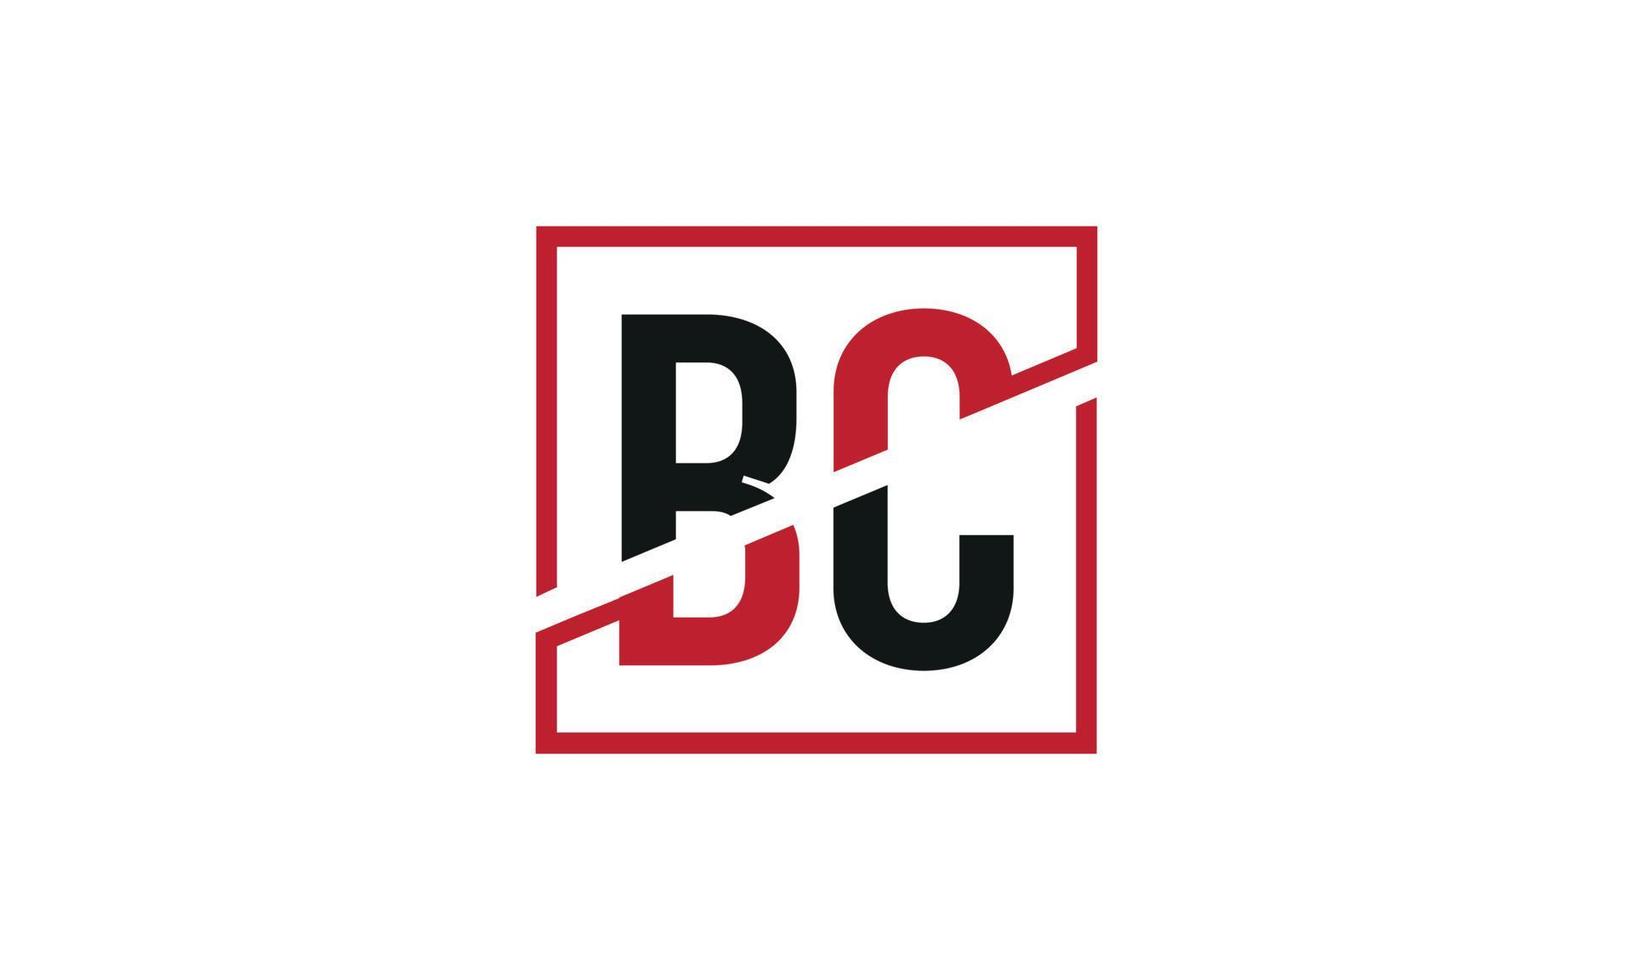 Buchstabe bc Logo pro Vektordatei pro Vektor